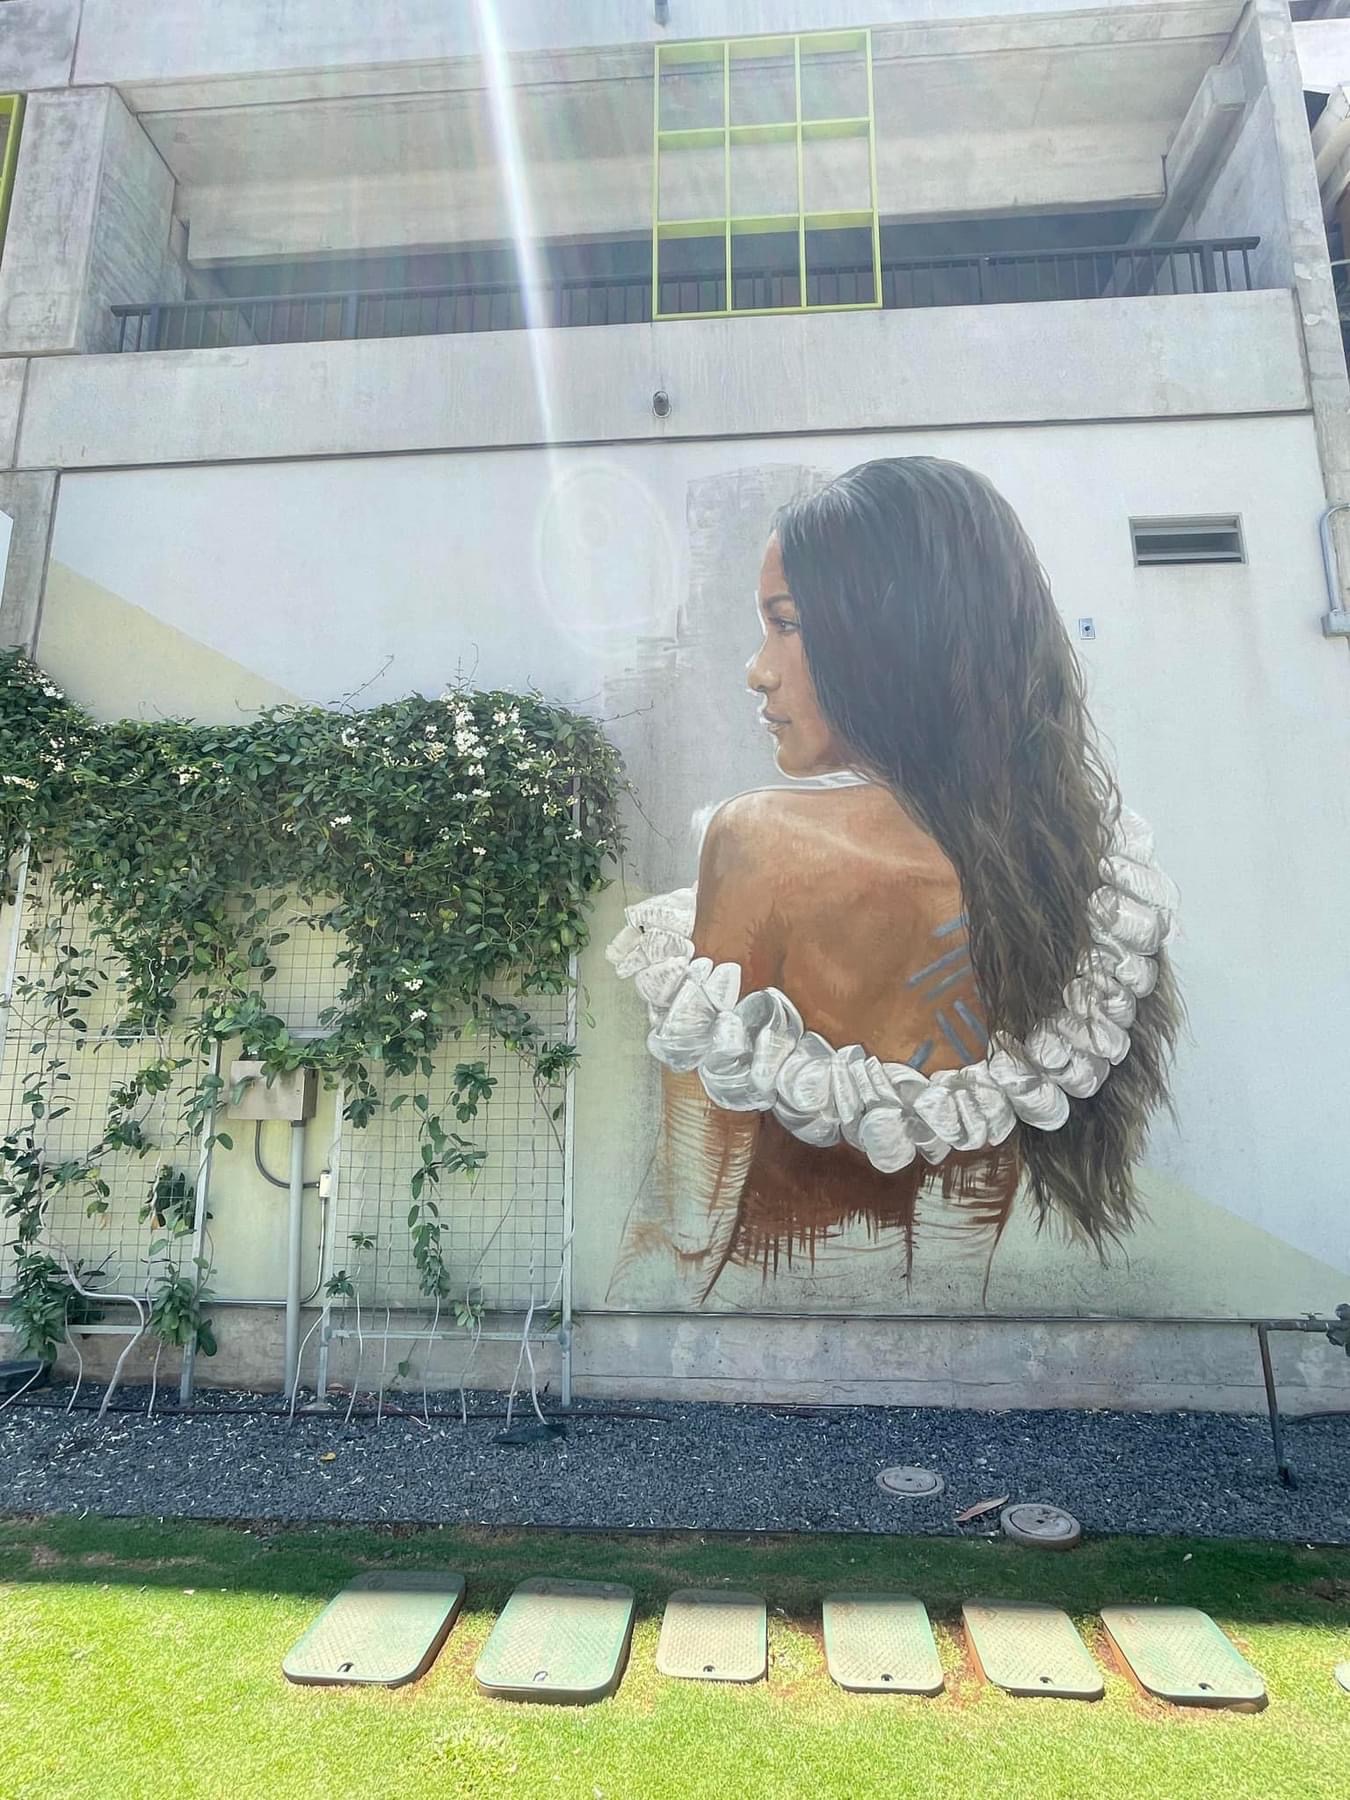 hawaii kakaako mural hawaiian girl parking lot